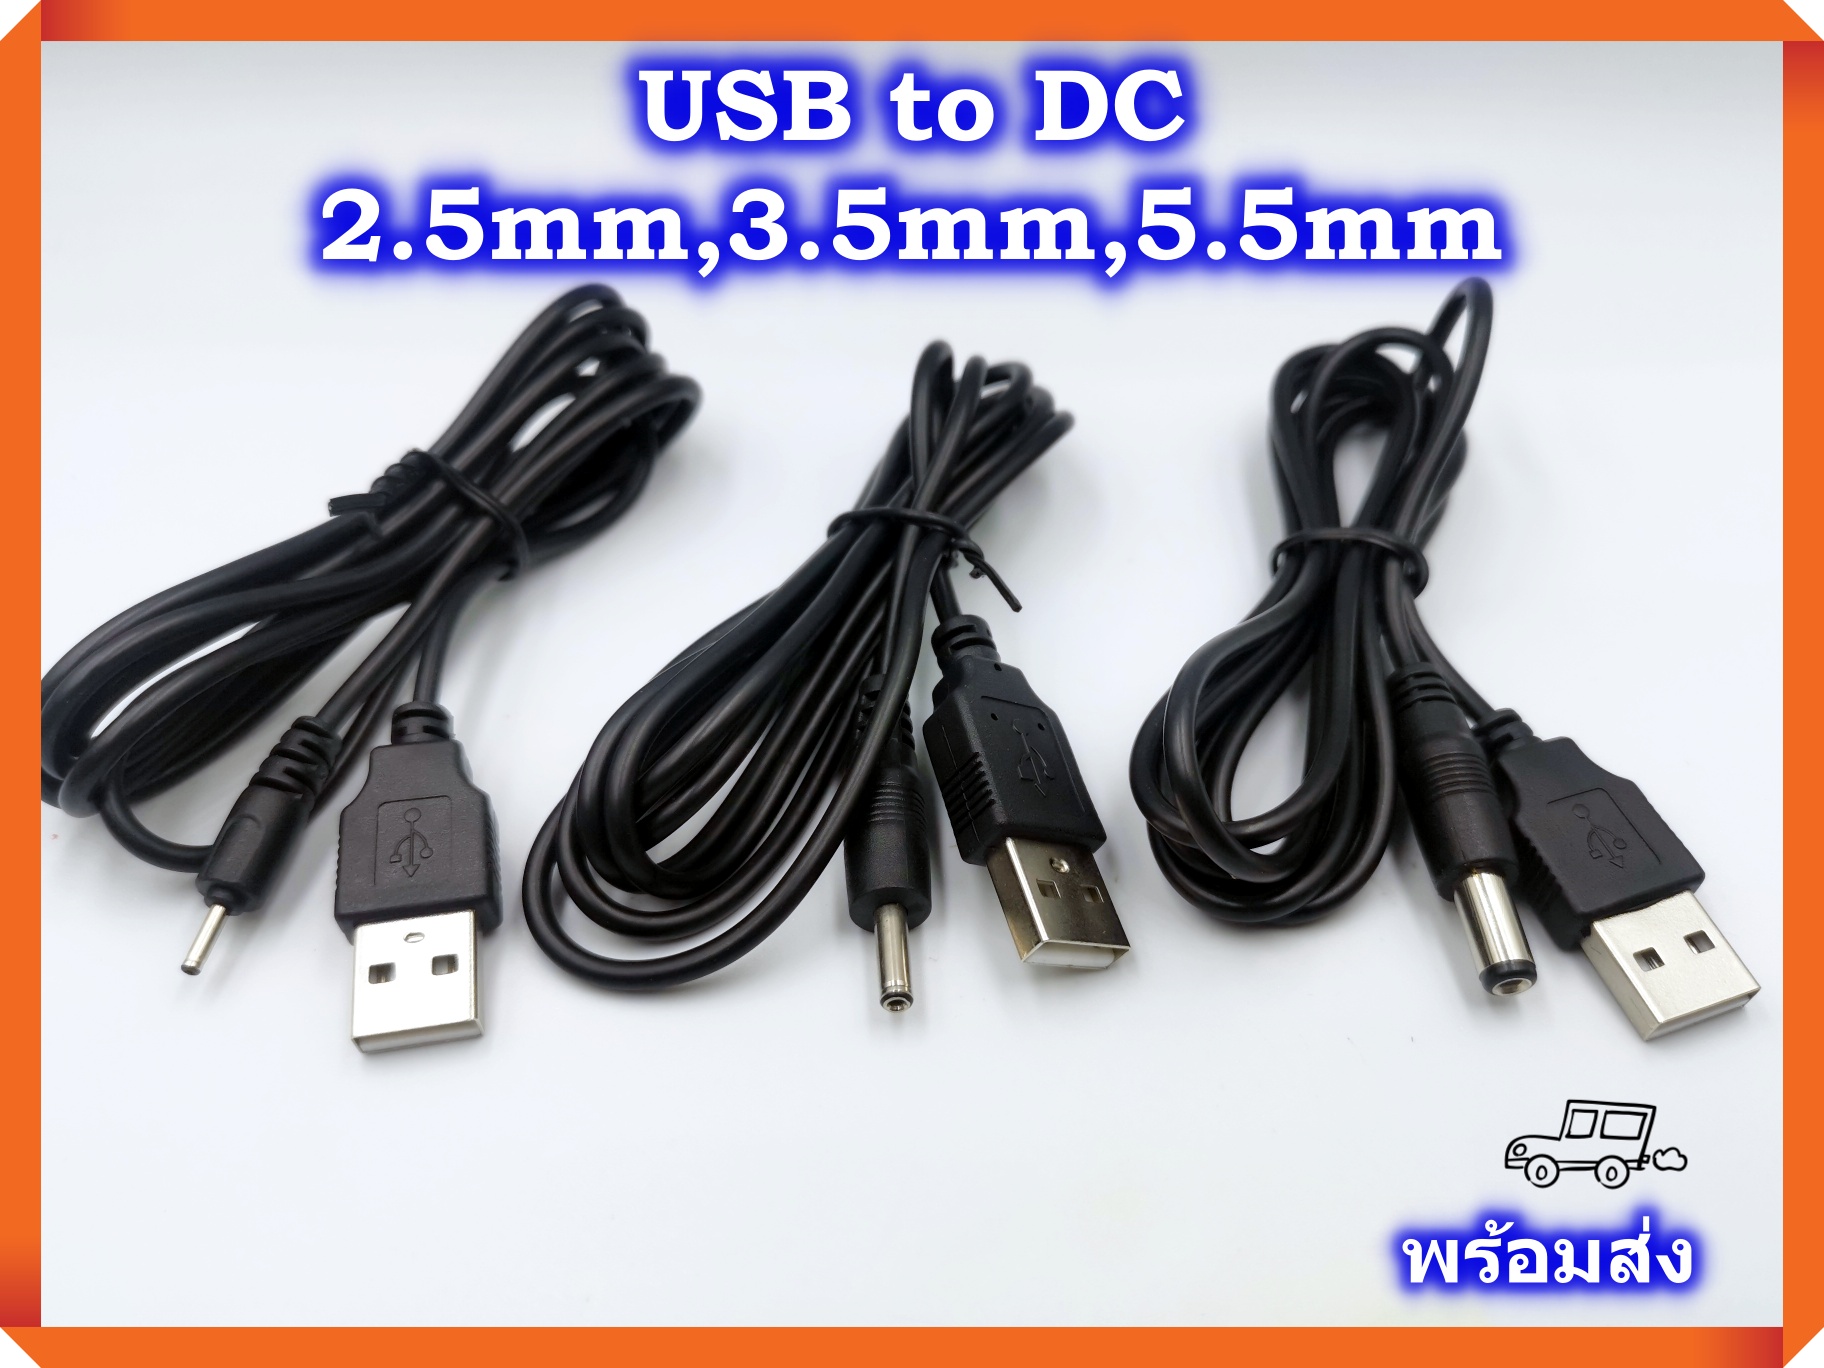 สายชาร์จ USB to DC 2.5mm USB to DC 3.5mm USB to DC 5.5mm สาย USB แปลงเป็นแจ็ค DC 2.5mm DC3.5mm DC5.5mm ความยาว 1 เมตร